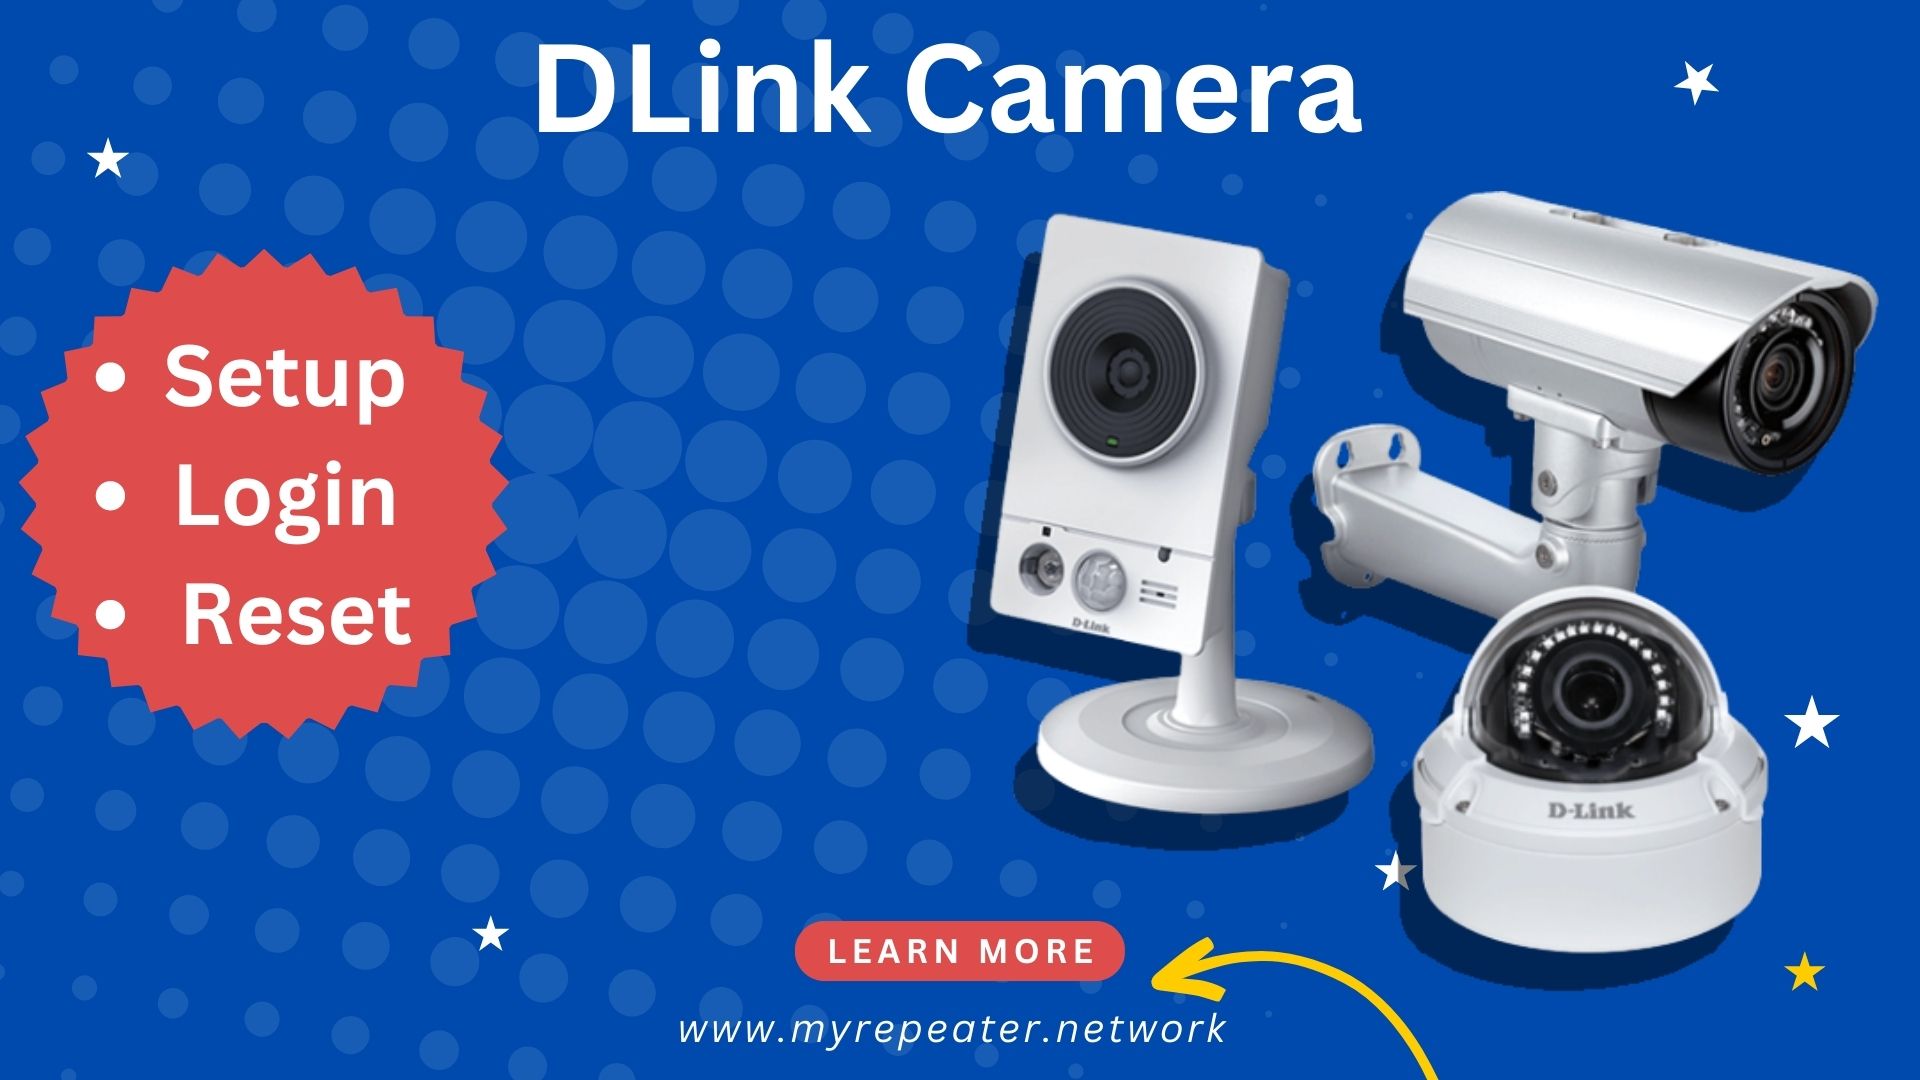 DLink Camera setup, login and reset